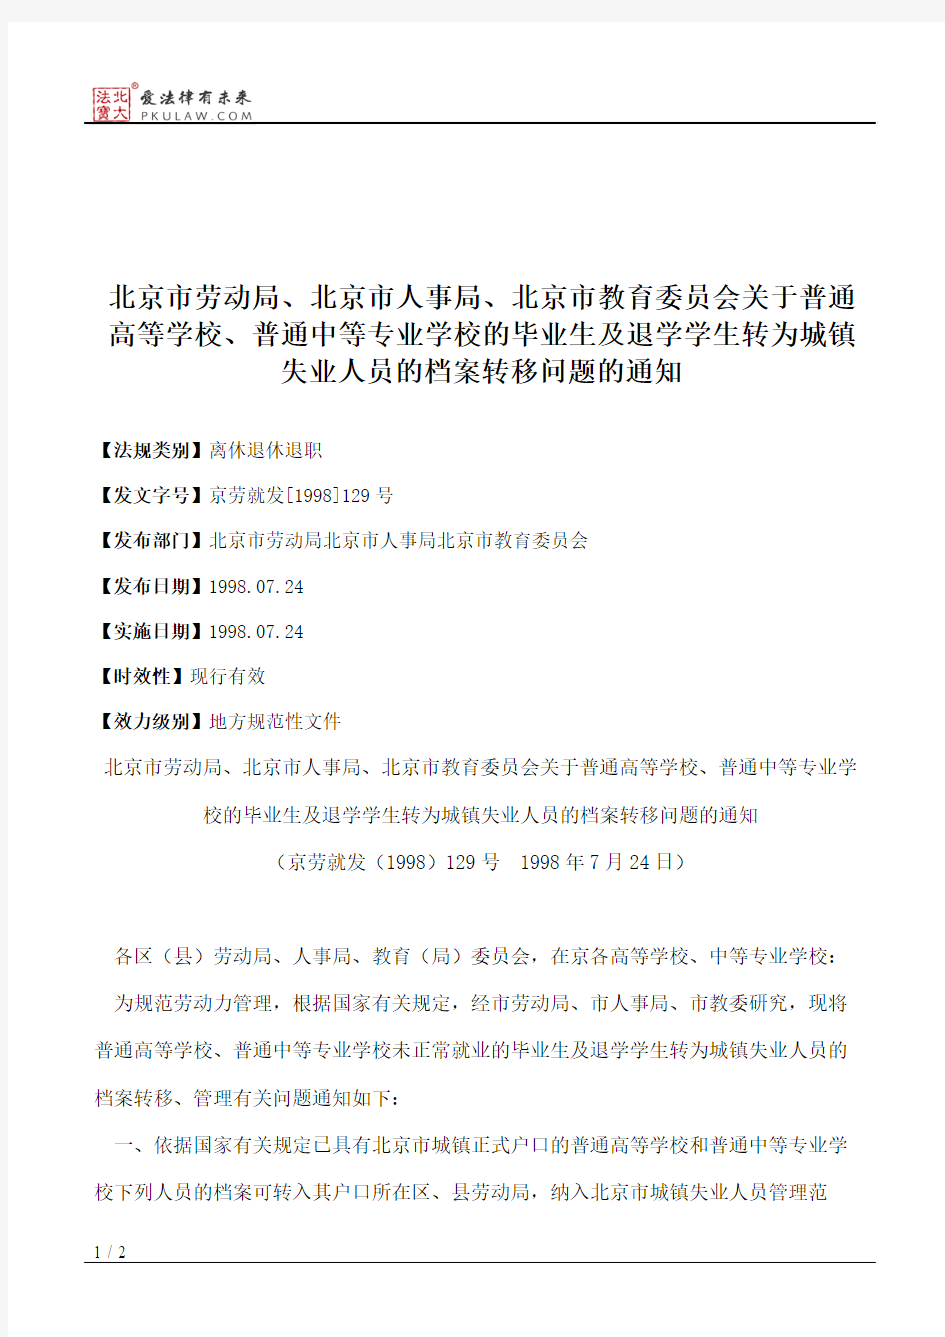 北京市劳动局、北京市人事局、北京市教育委员会关于普通高等学校